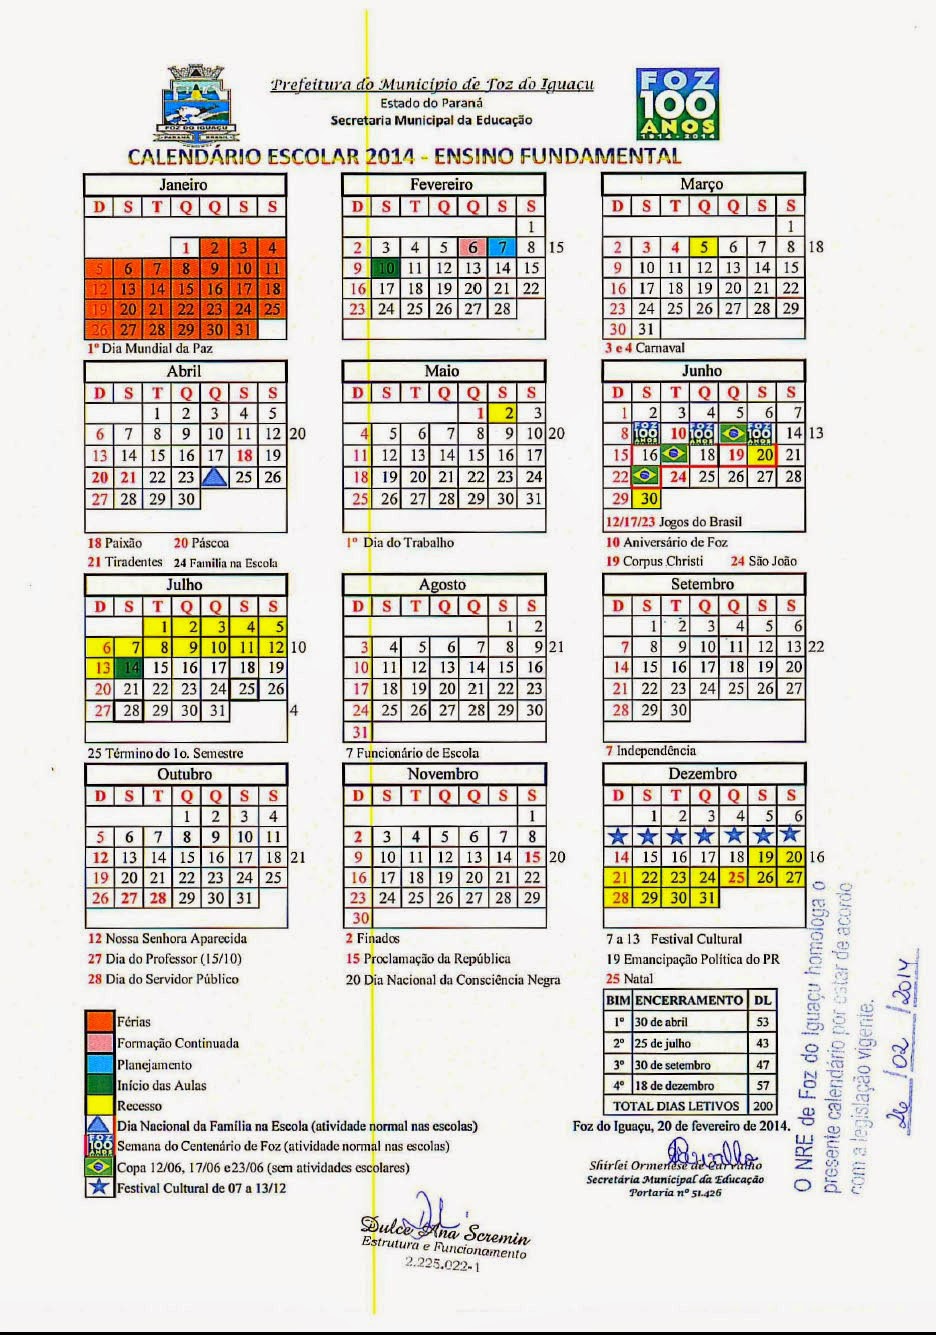 Calendario escolar cecytes sonora 2014 1040